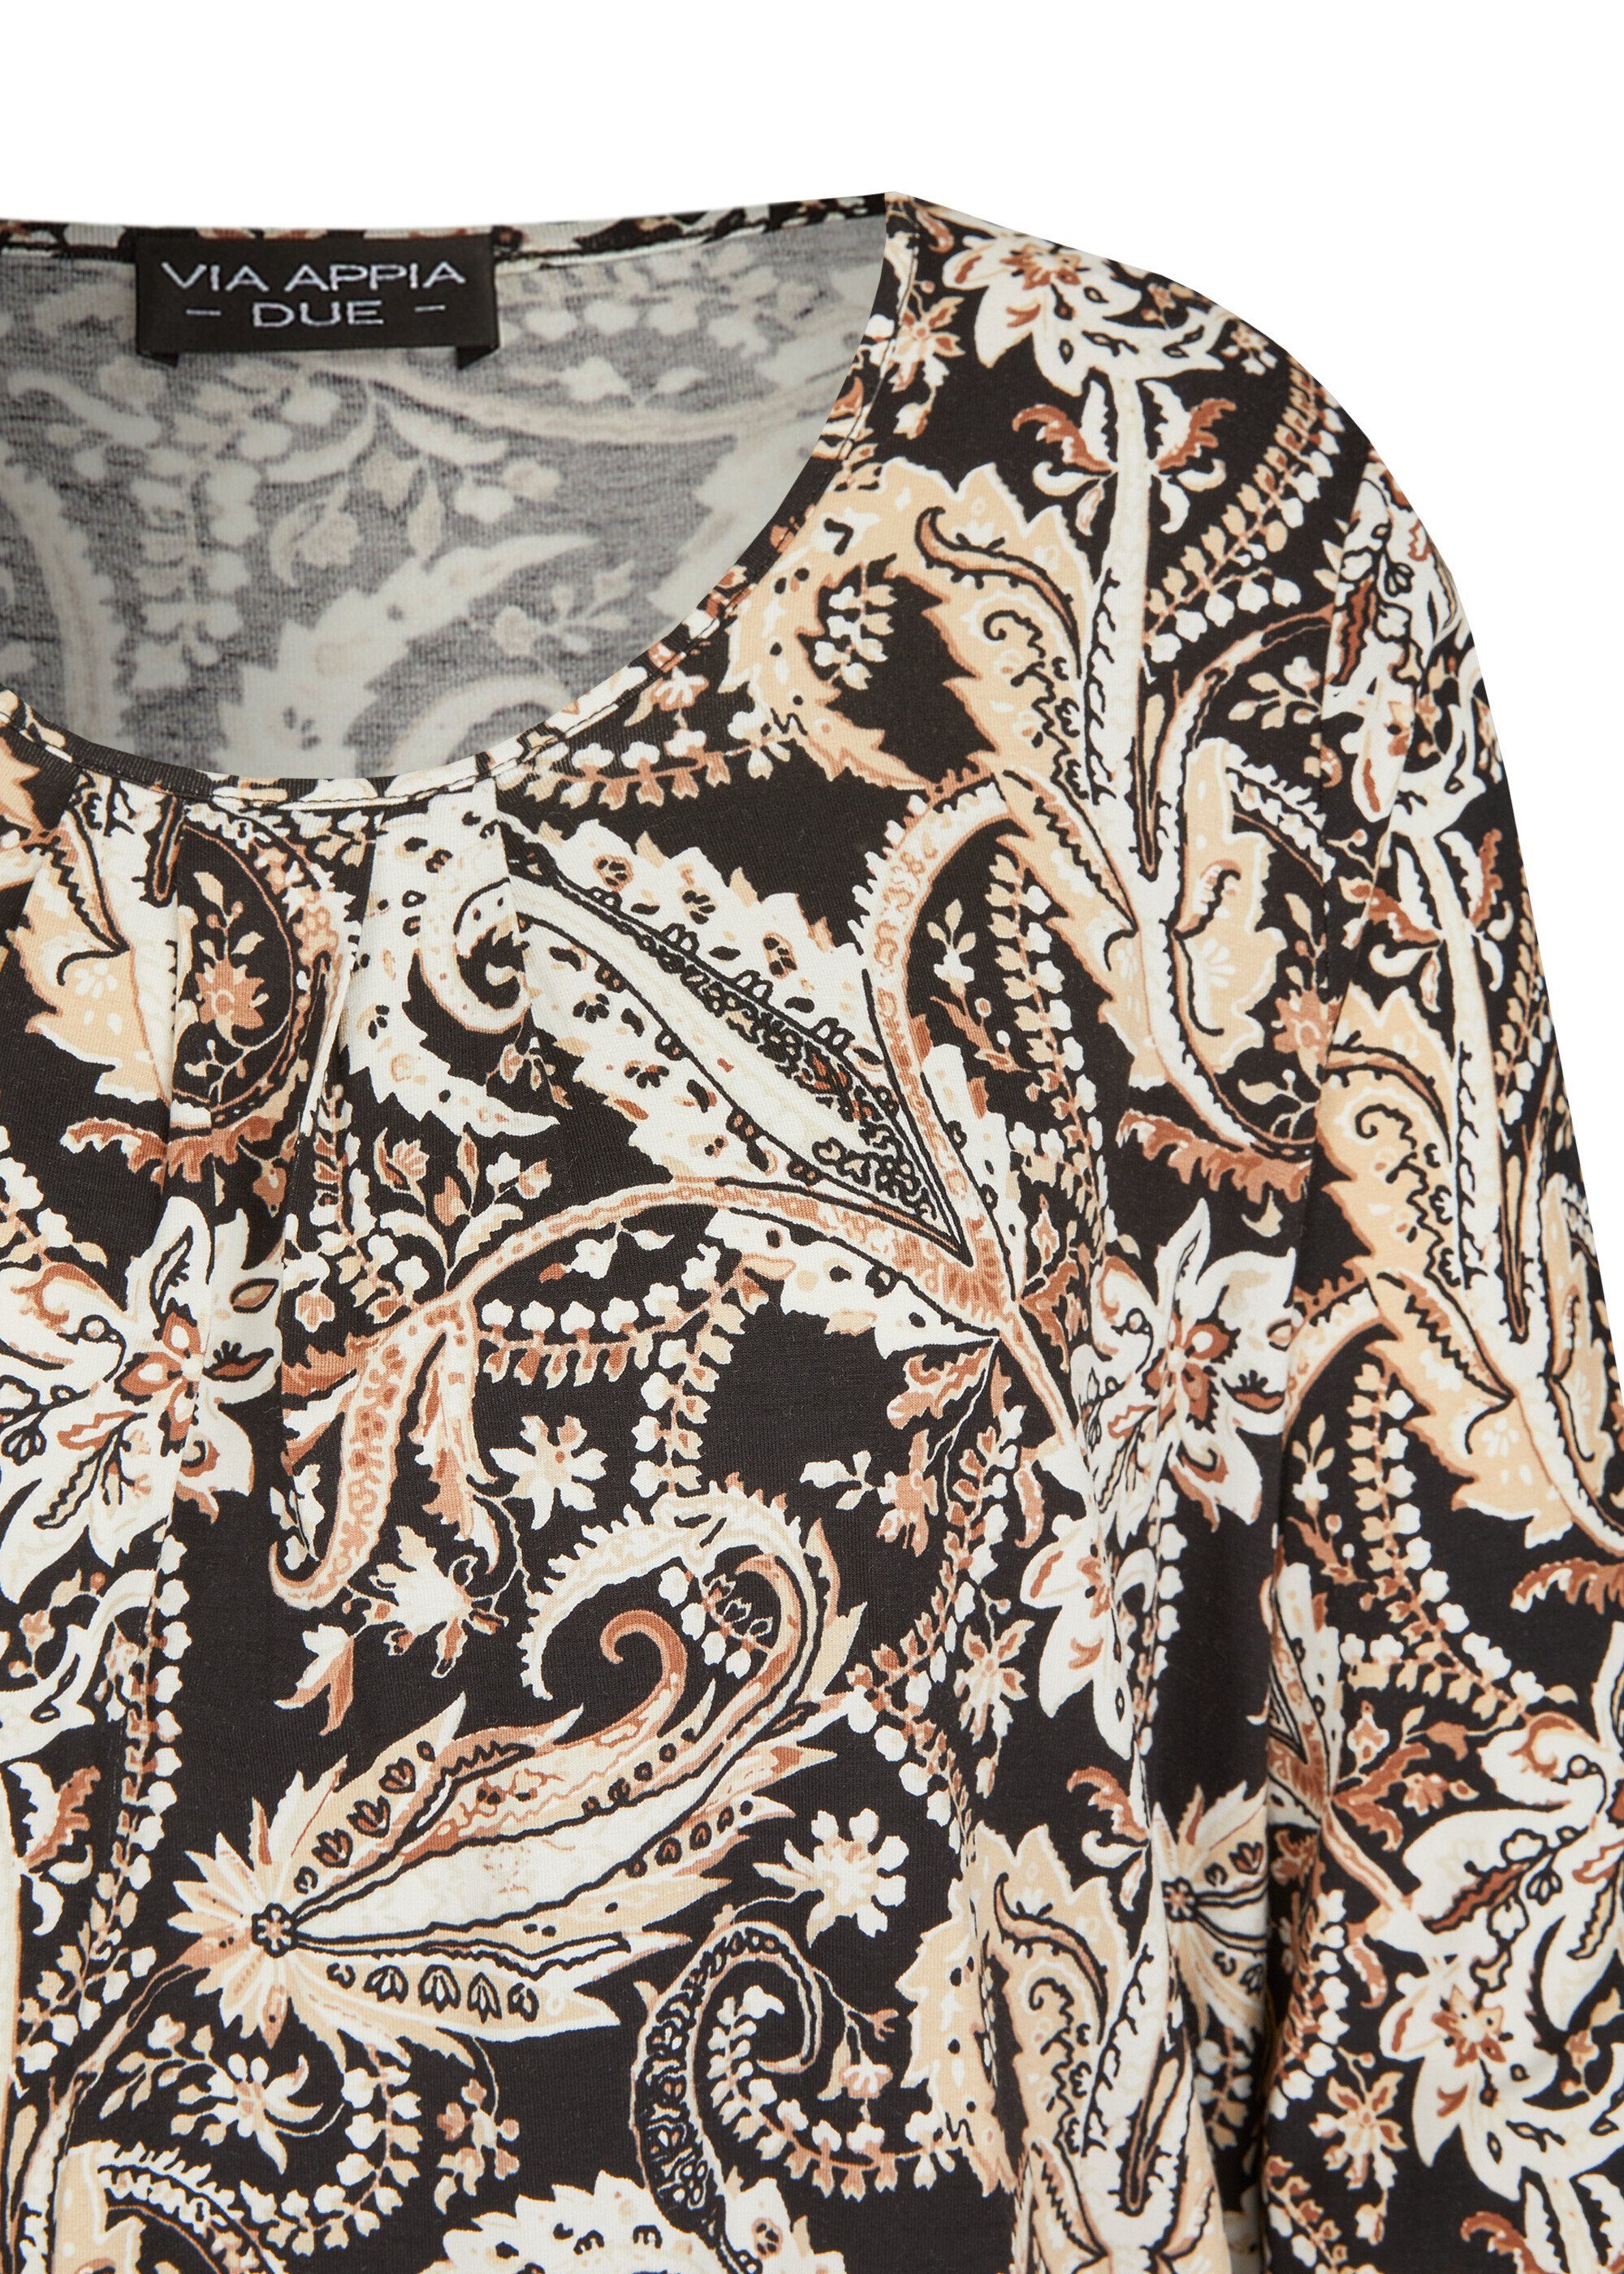 schwarz Verspieltes 3/4-Arm-Shirt VIA APPIA Print-Shirt multicolor DUE Muster mit floralem